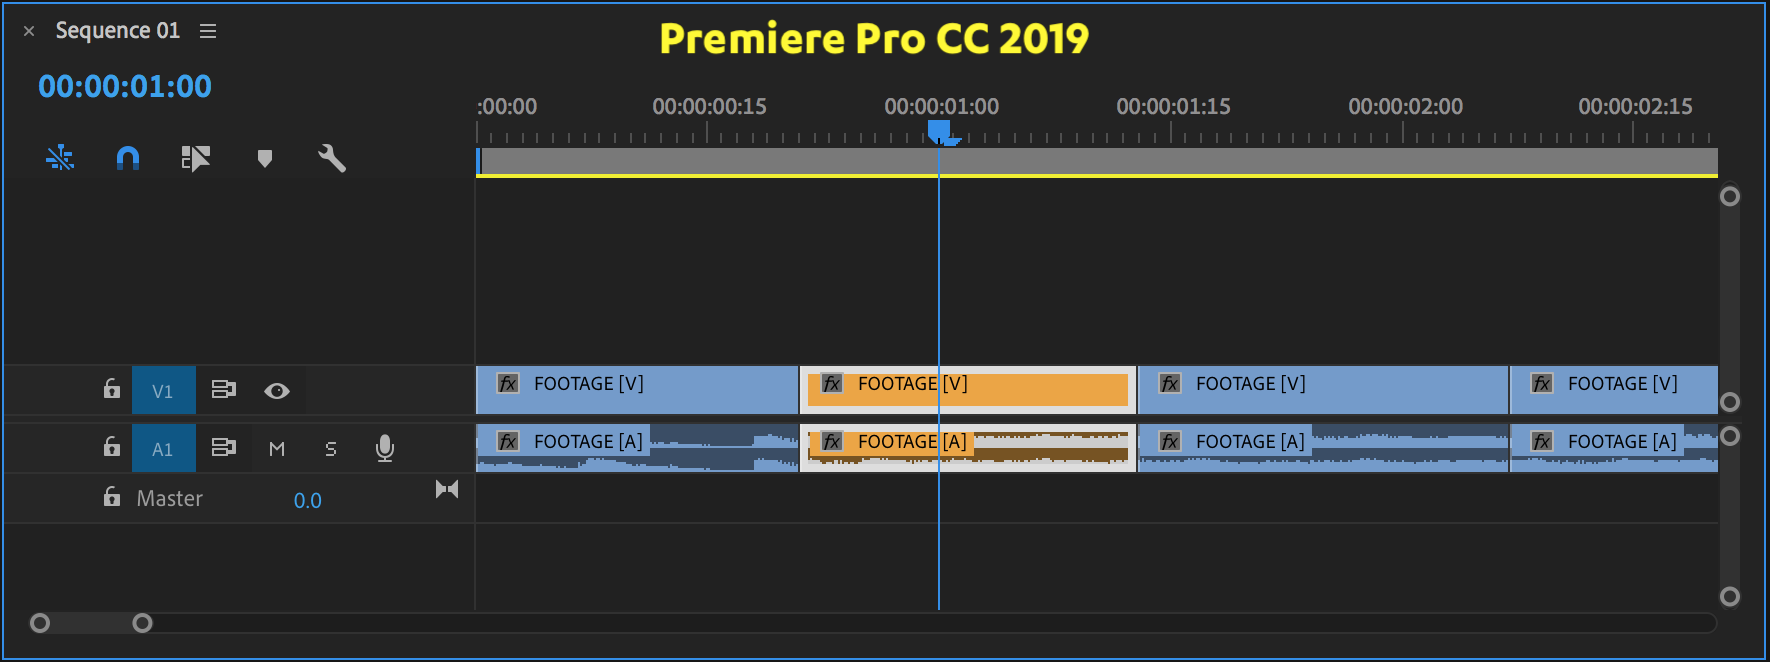 label-color-premiere-pro-cc-2019.png